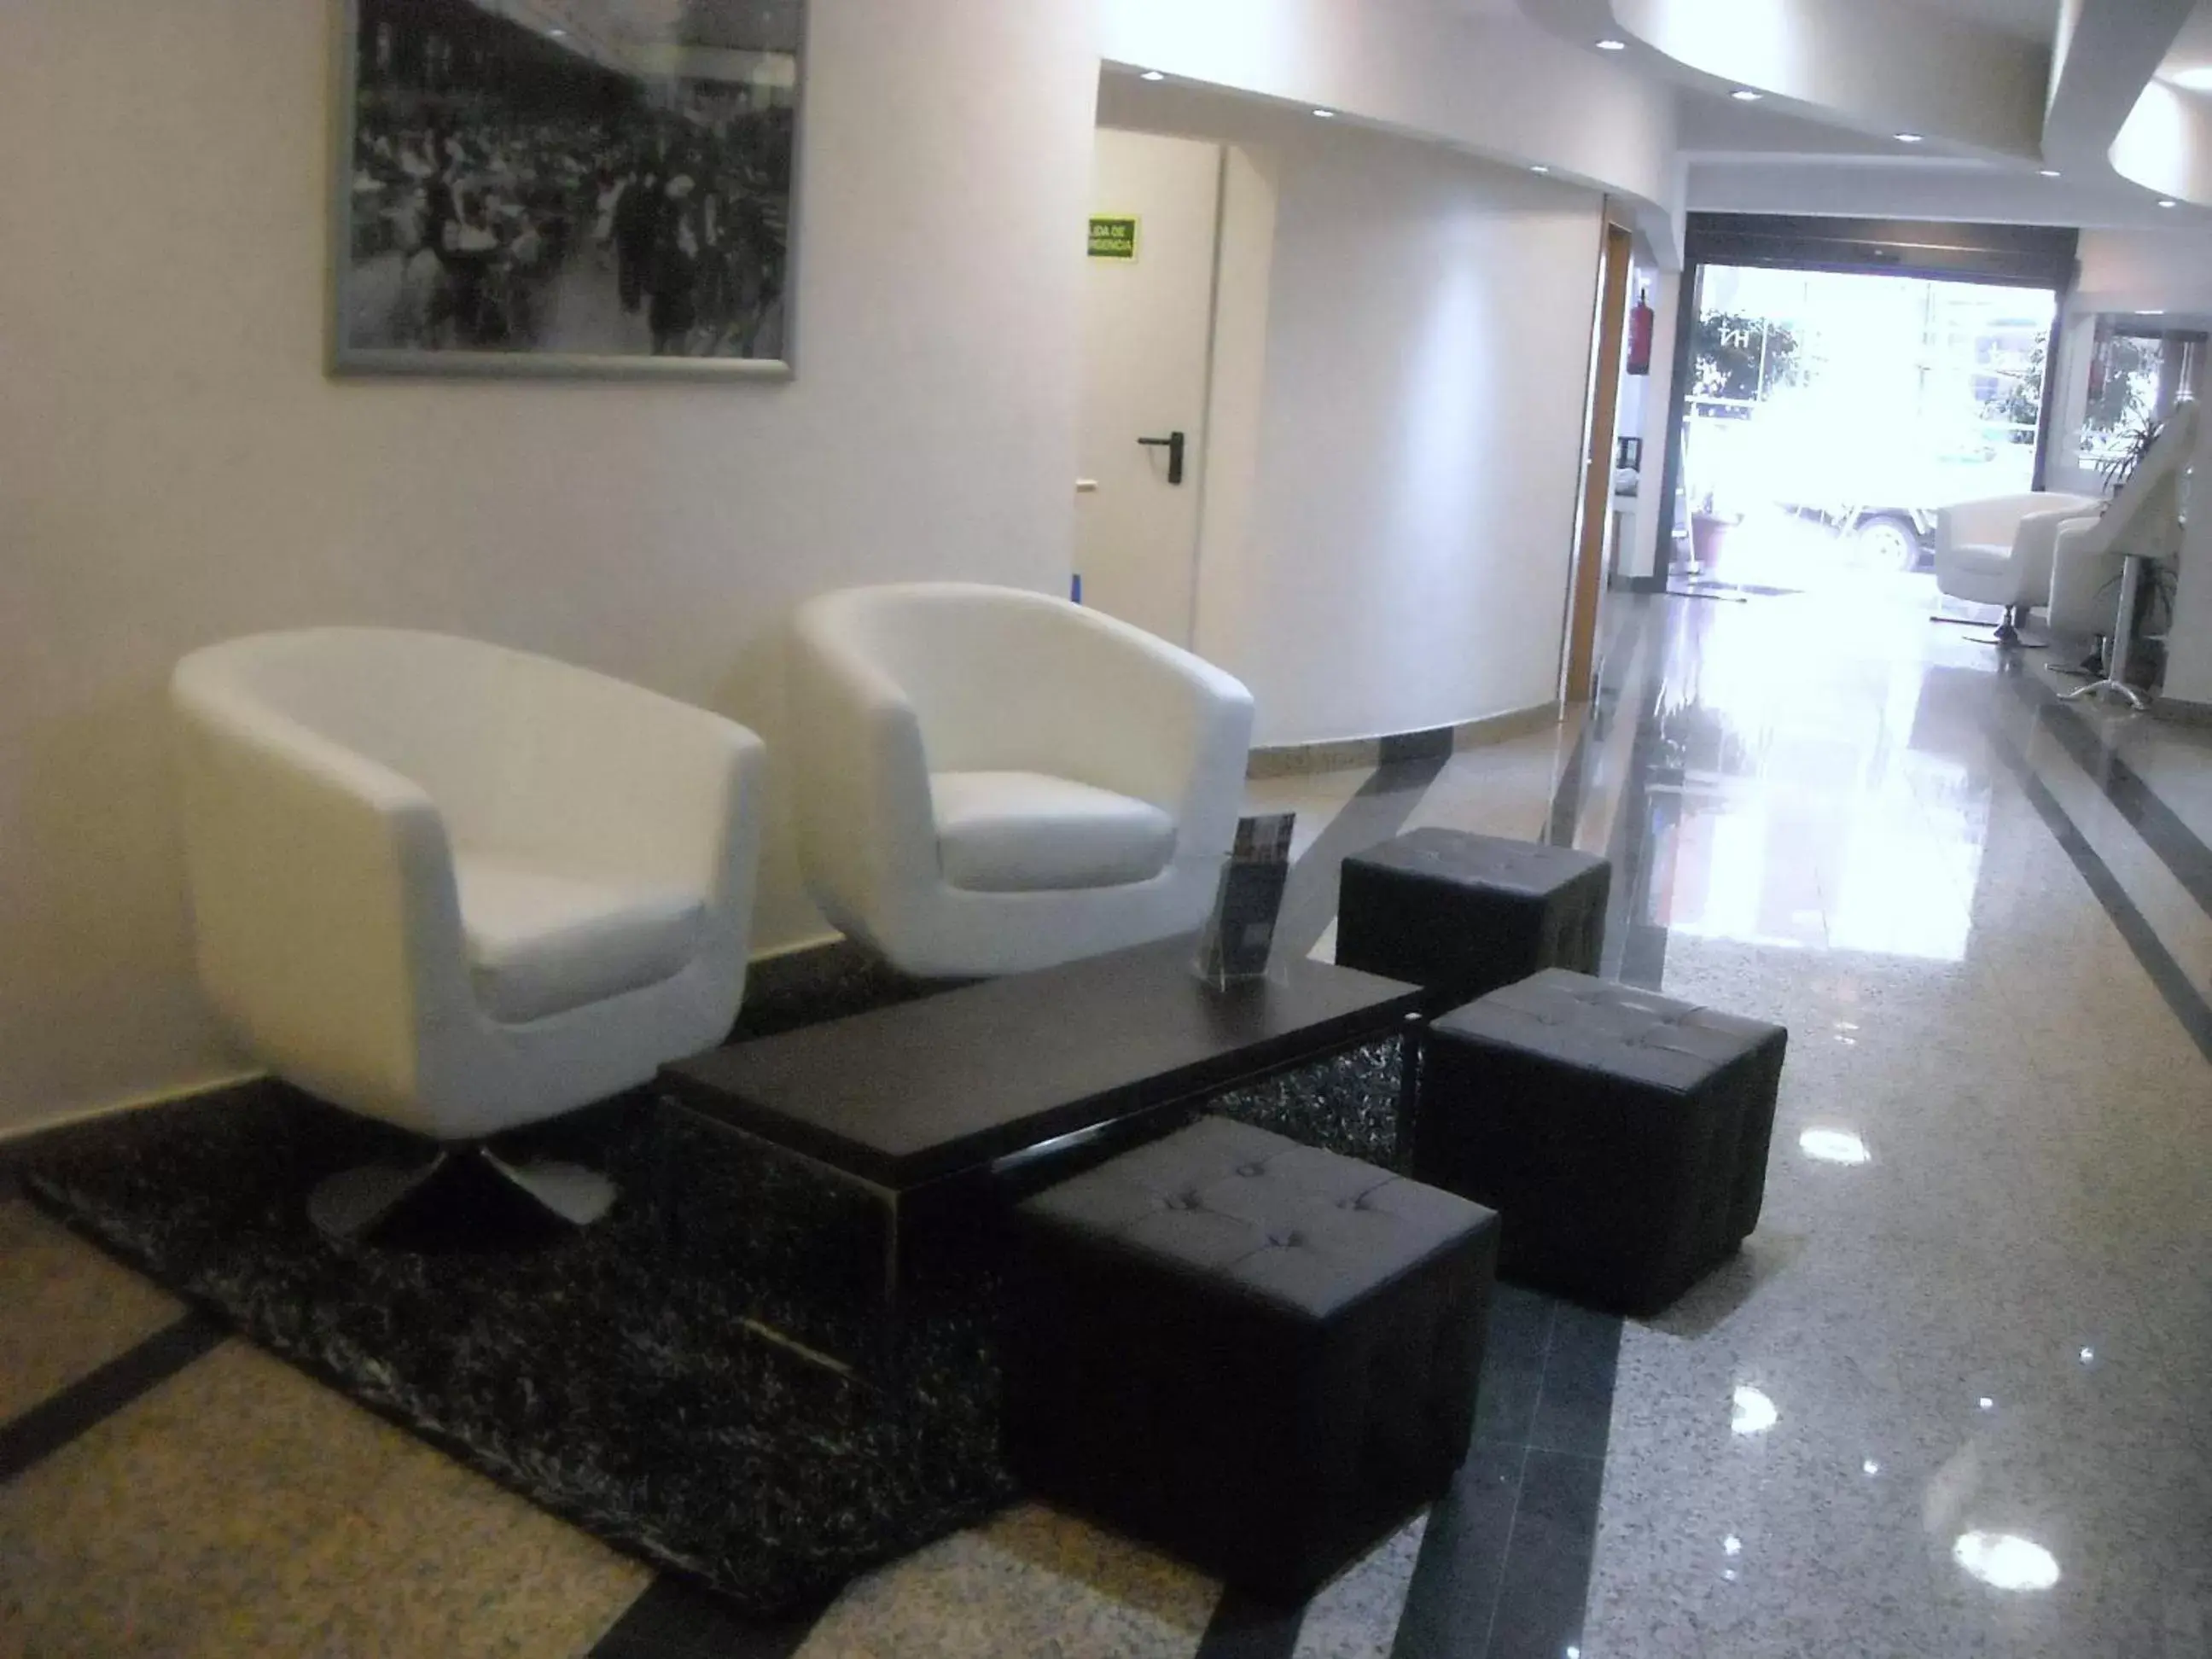 Lobby or reception, Lobby/Reception in Hotel Nuevo Triunfo